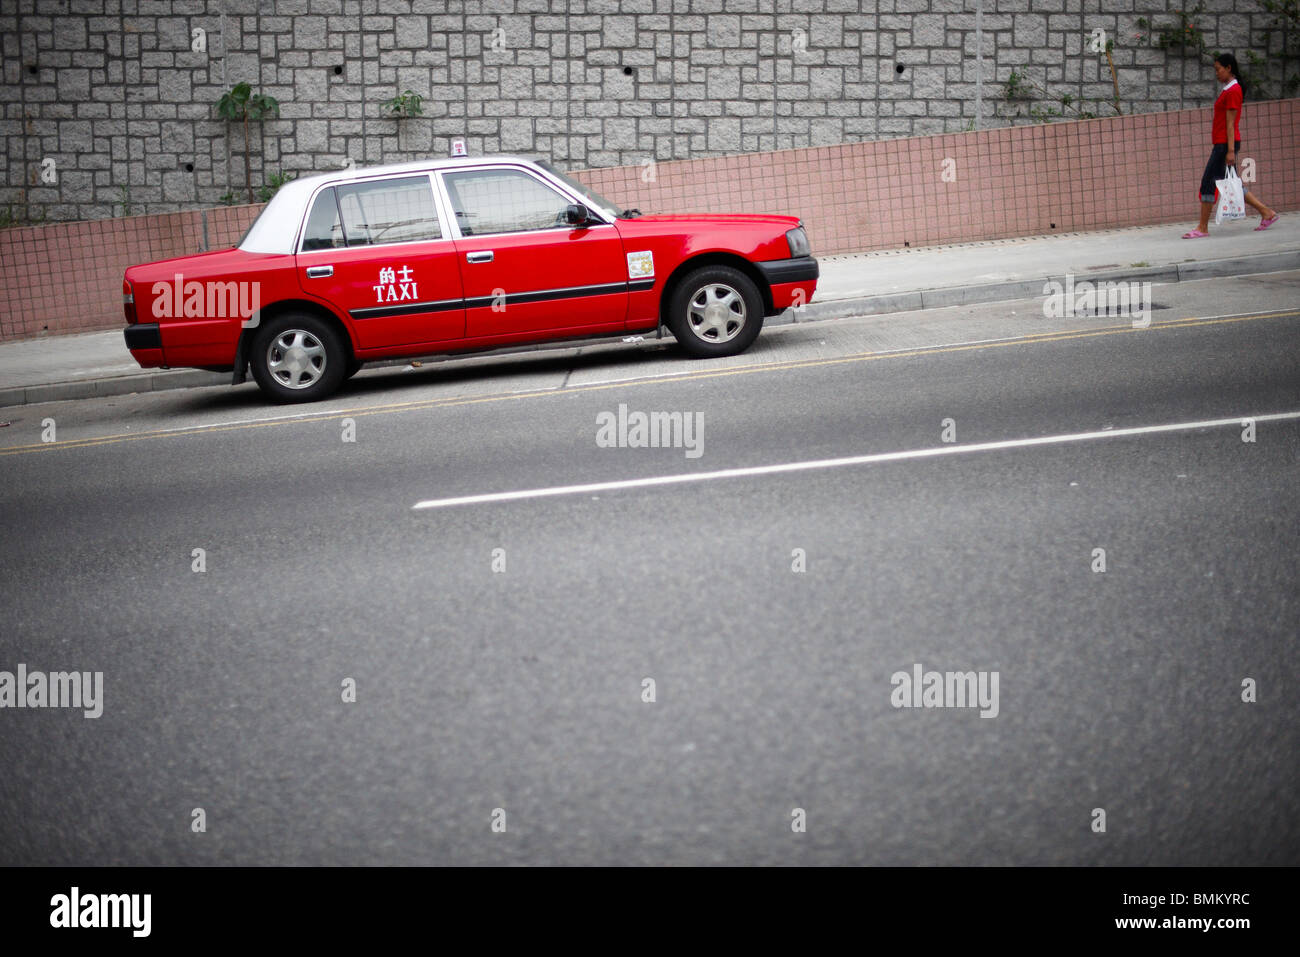 Ein rotes Taxi parkte auf einem Hang mit einem Fußgänger Kleid in der gleichen auffällig rot zu Fuß in Richtung Auto, tragen weiße Plastiktüte. Stockfoto